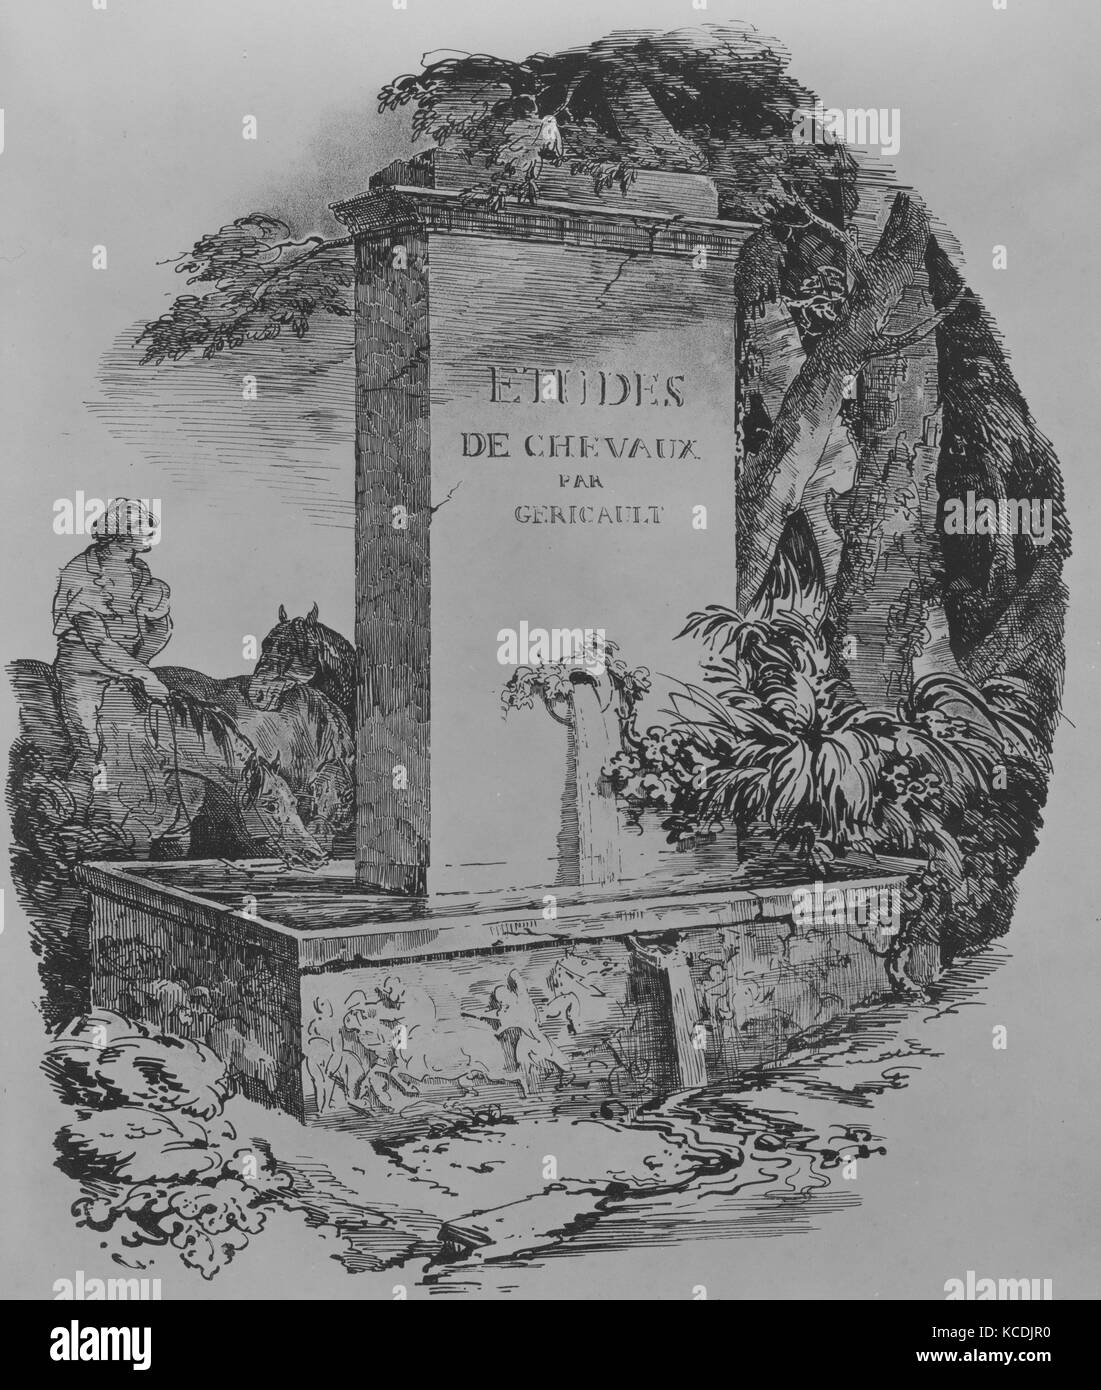 Bewässerung Trog, Titelblatt von "Studien von Pferden" (Etudes de Chevaux), Theodore Gericault, 1822 Stockfoto